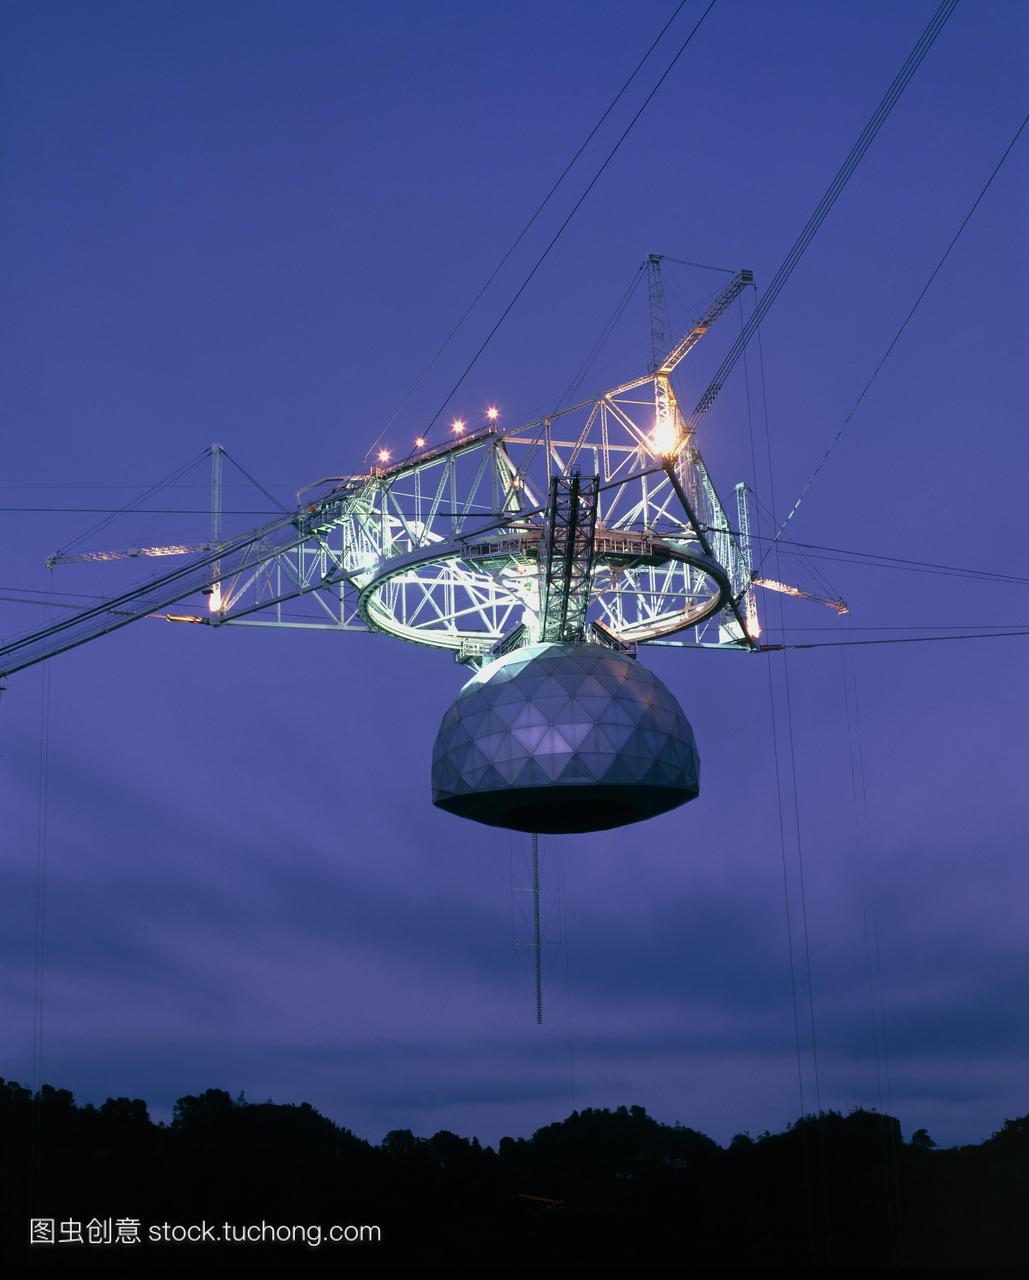 雷达天线罩的阿雷西博望远镜。在1997年为ar